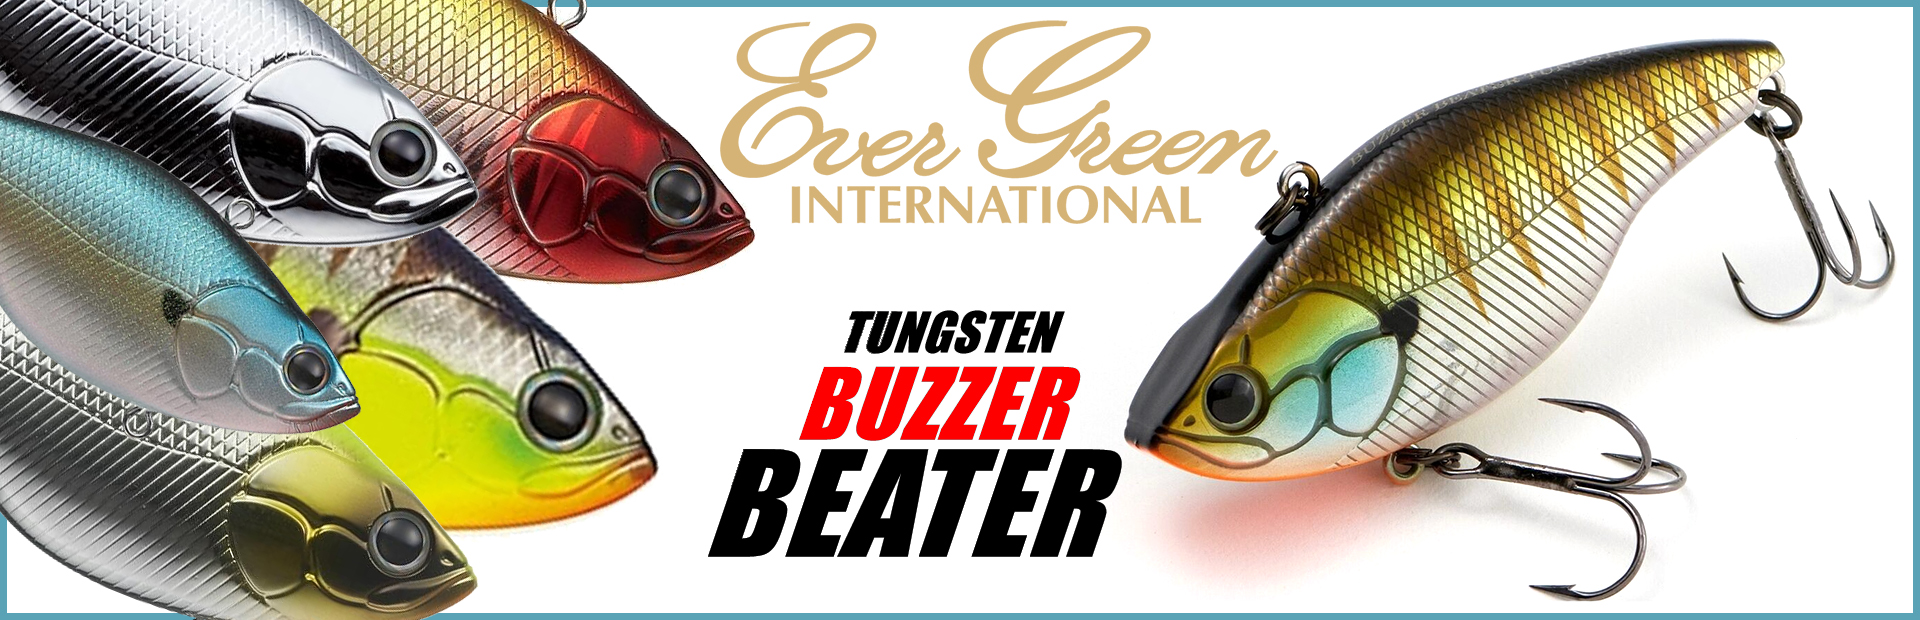 Evergreen Buzzer Beater Tungsten